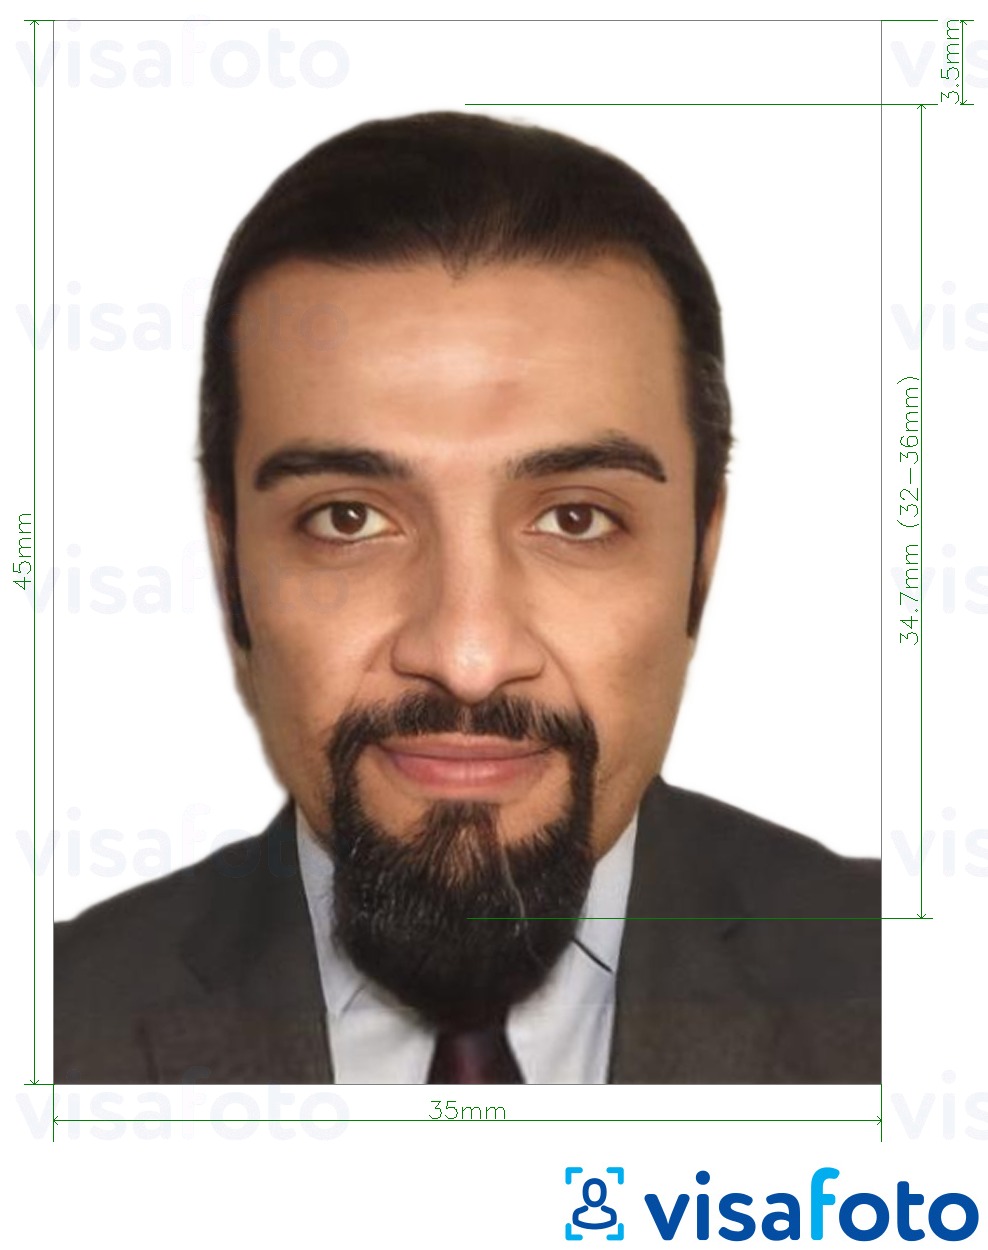 Exemples sur des photos pour Carte d'identité algérienne 35x45 mm (3,5x4,5 cm) avec les spécifications de taille exactes